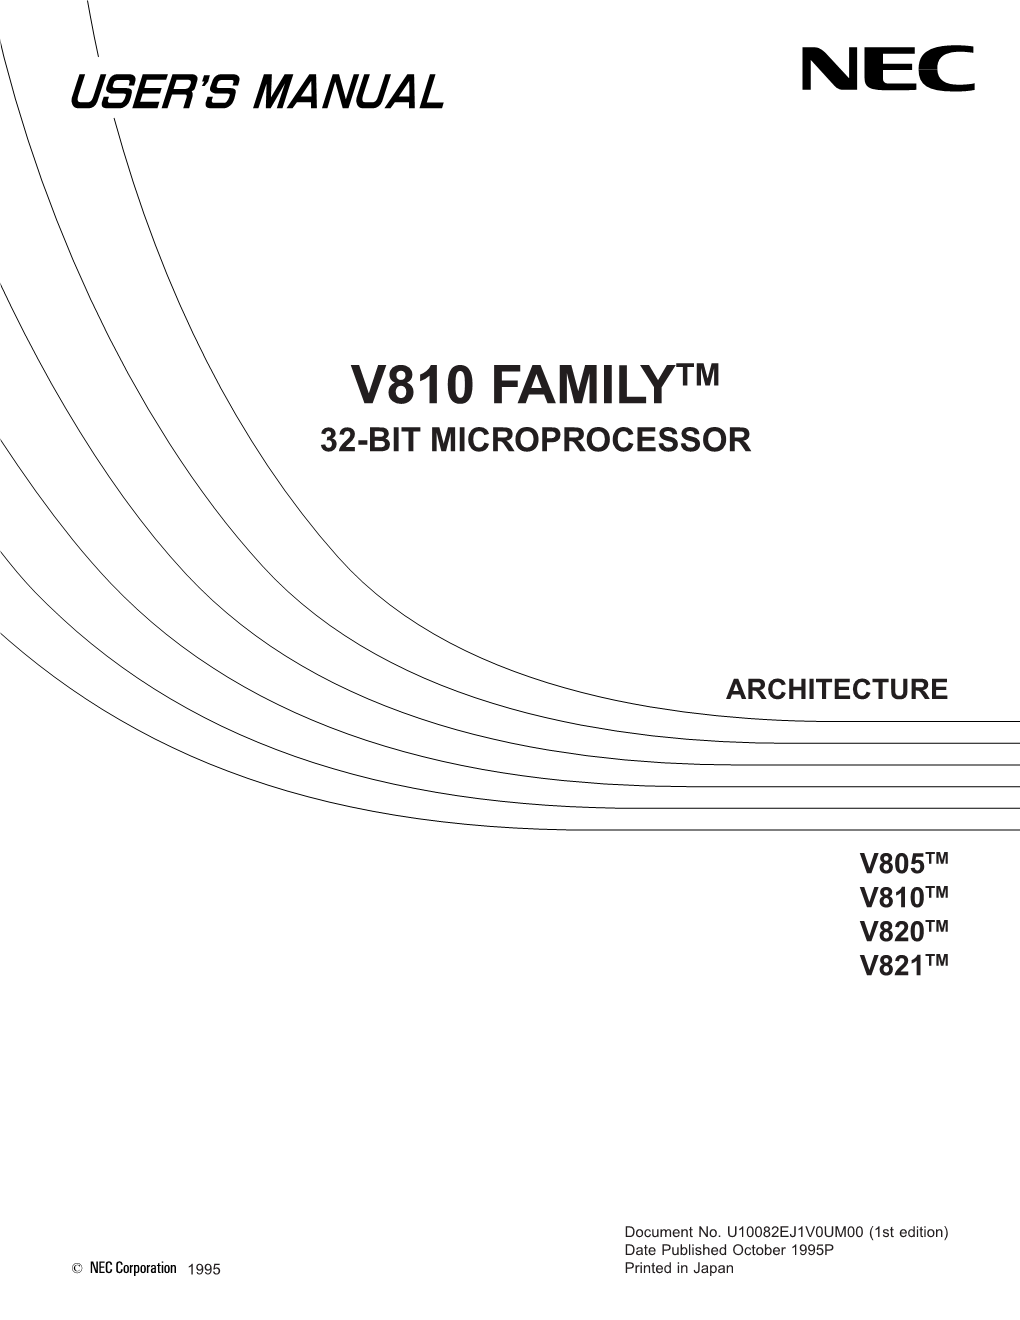 V810 Familytm 32-Bit Microprocessor